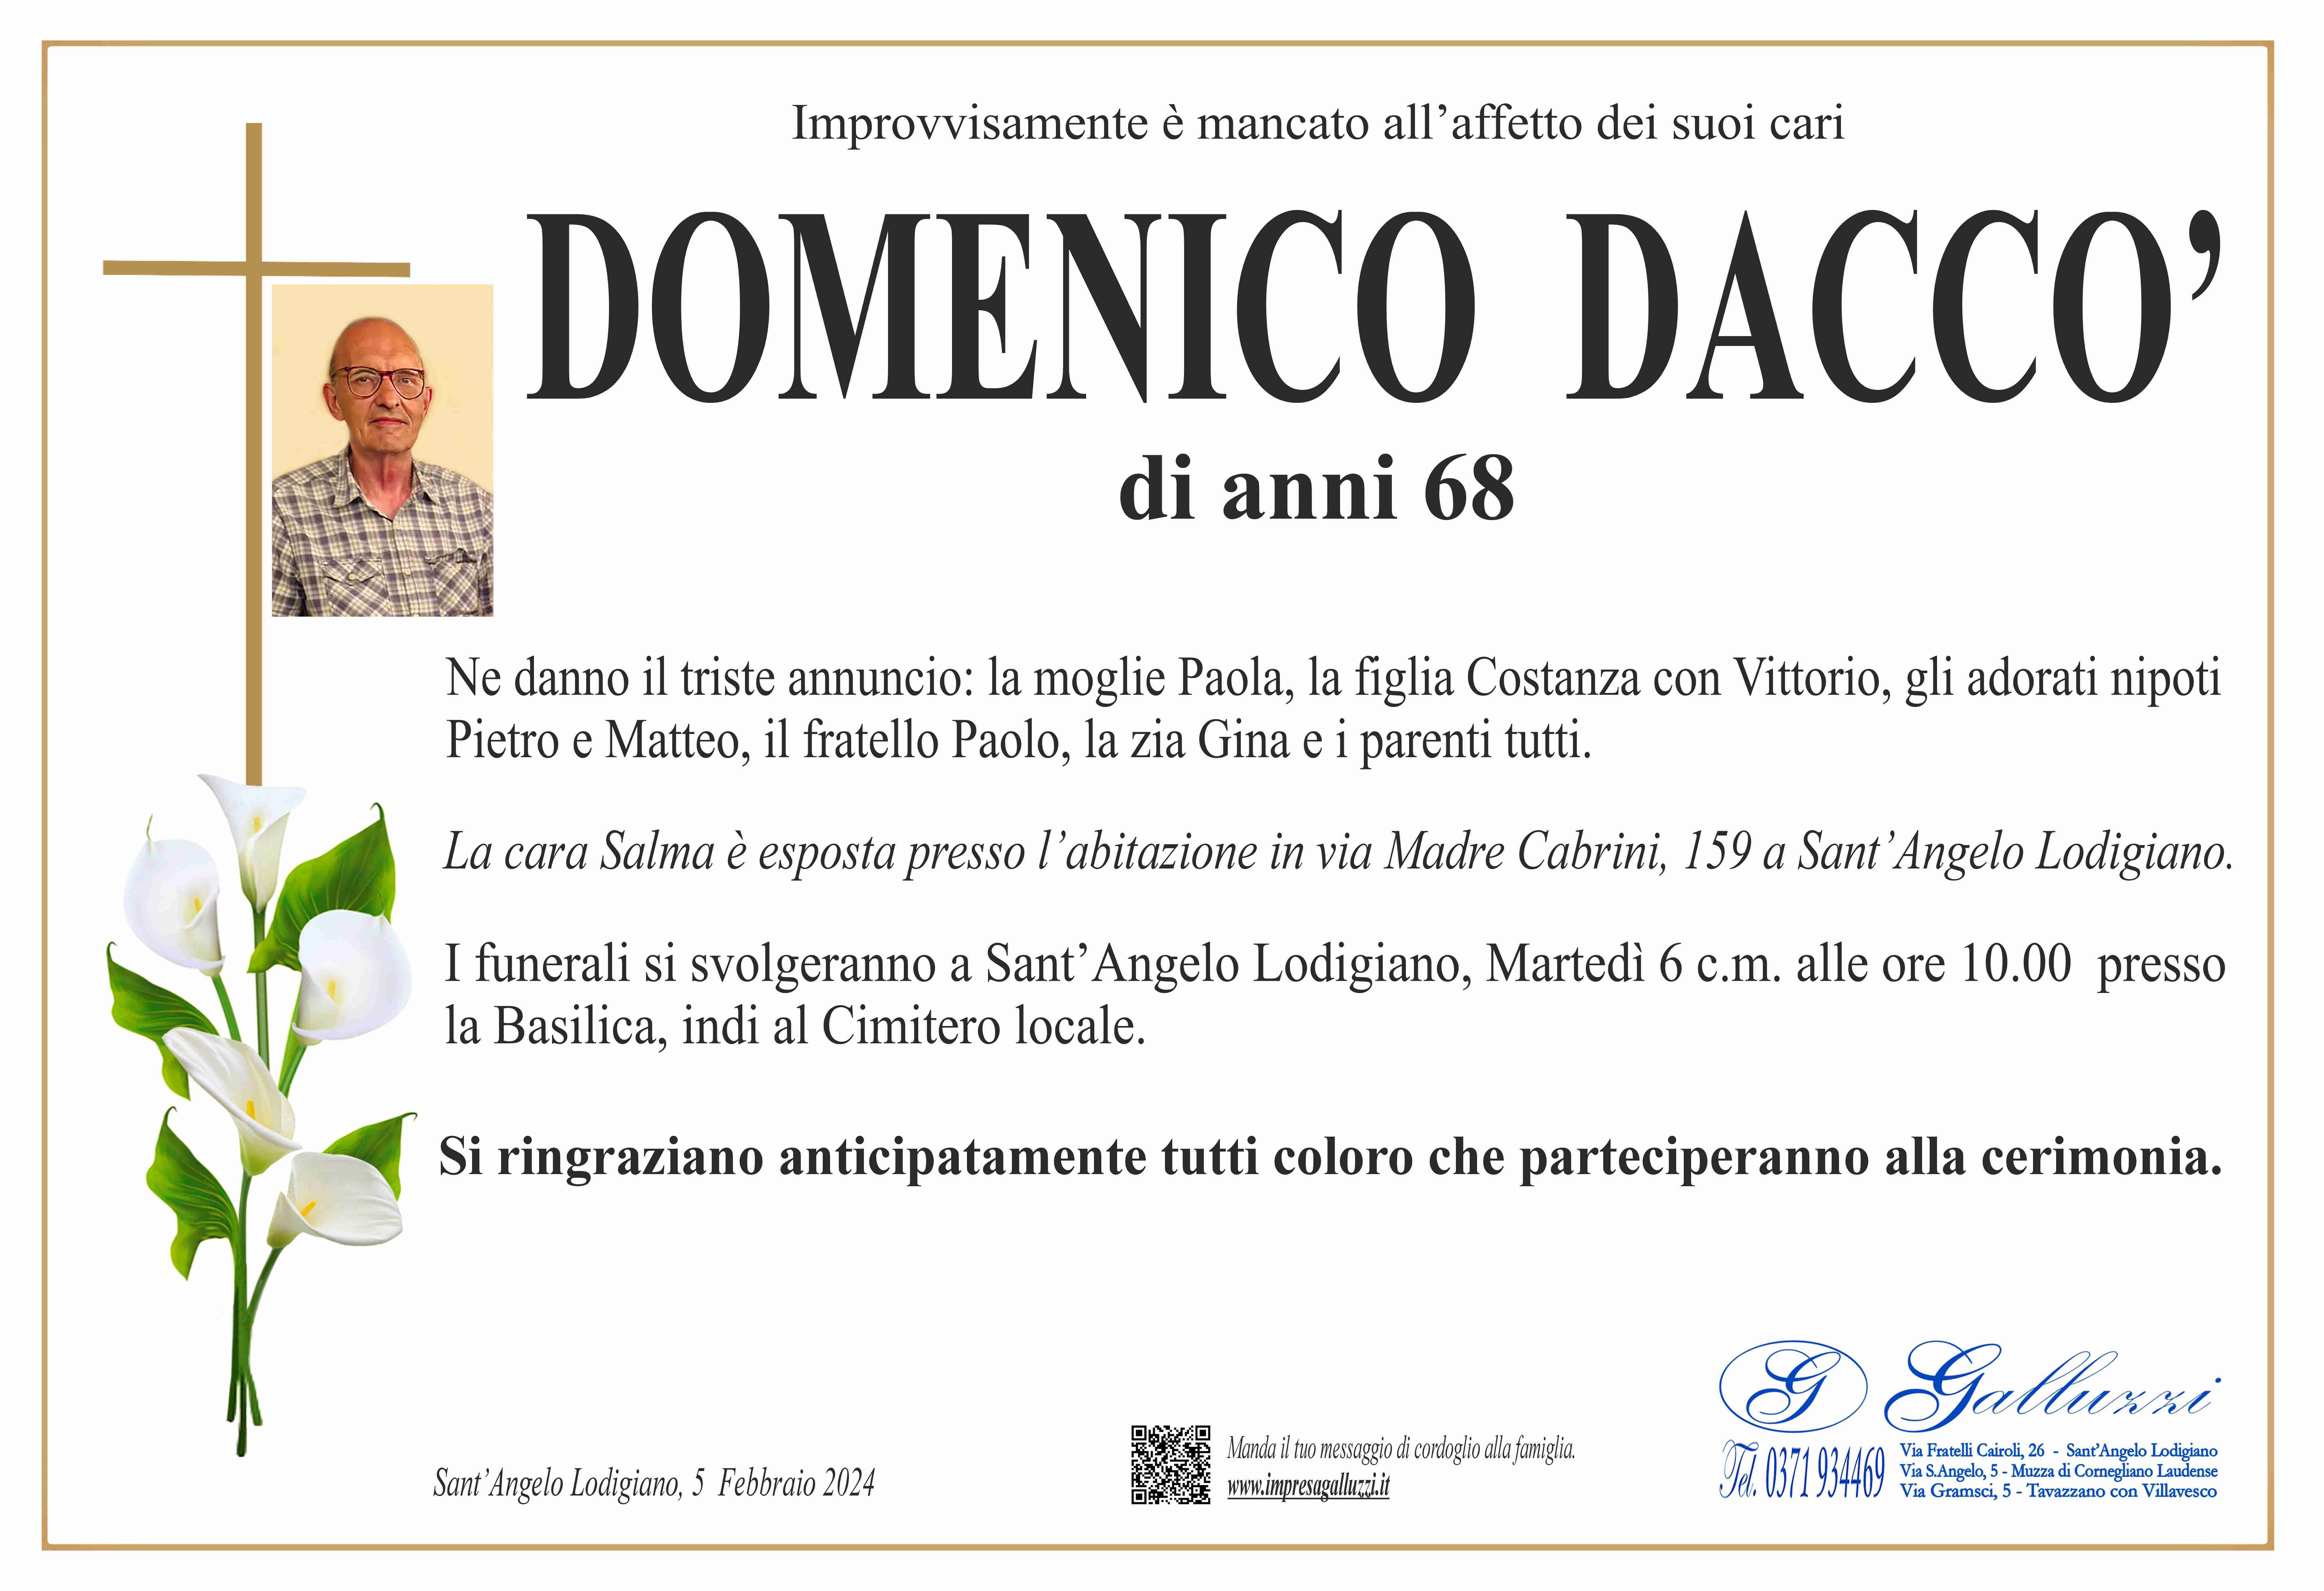 Domenico Daccò